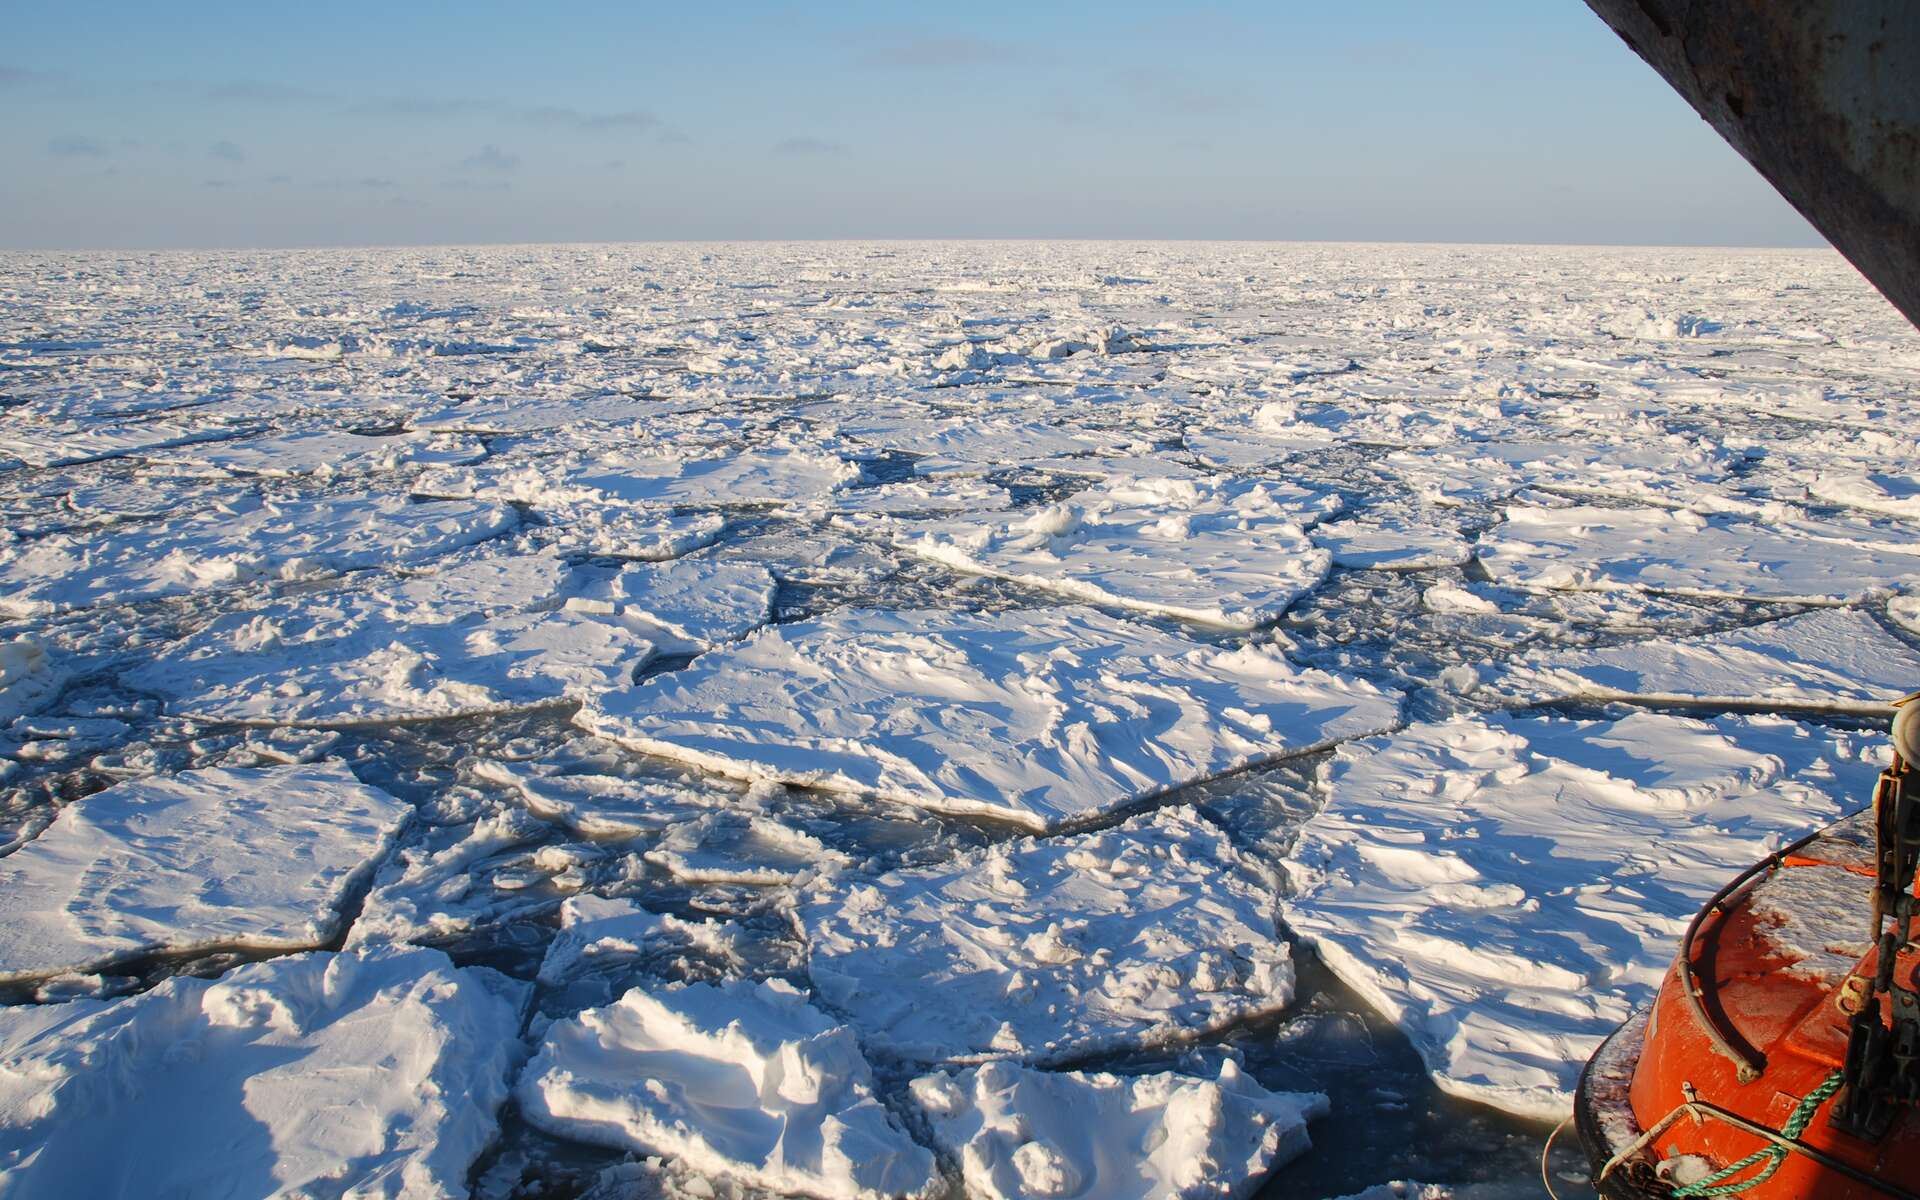 Une vue de la banquise arctique au large du Spitzberg. Les mesures satellitaires montrent une tendance à une baisse de l'extension de ces glaces de mer. Des particules liées à l'activité humaine, piégées dans les glaces, pourraient donc bien être libérées dans les océans avec le réchauffement climatique. © Esa, M. Drusch